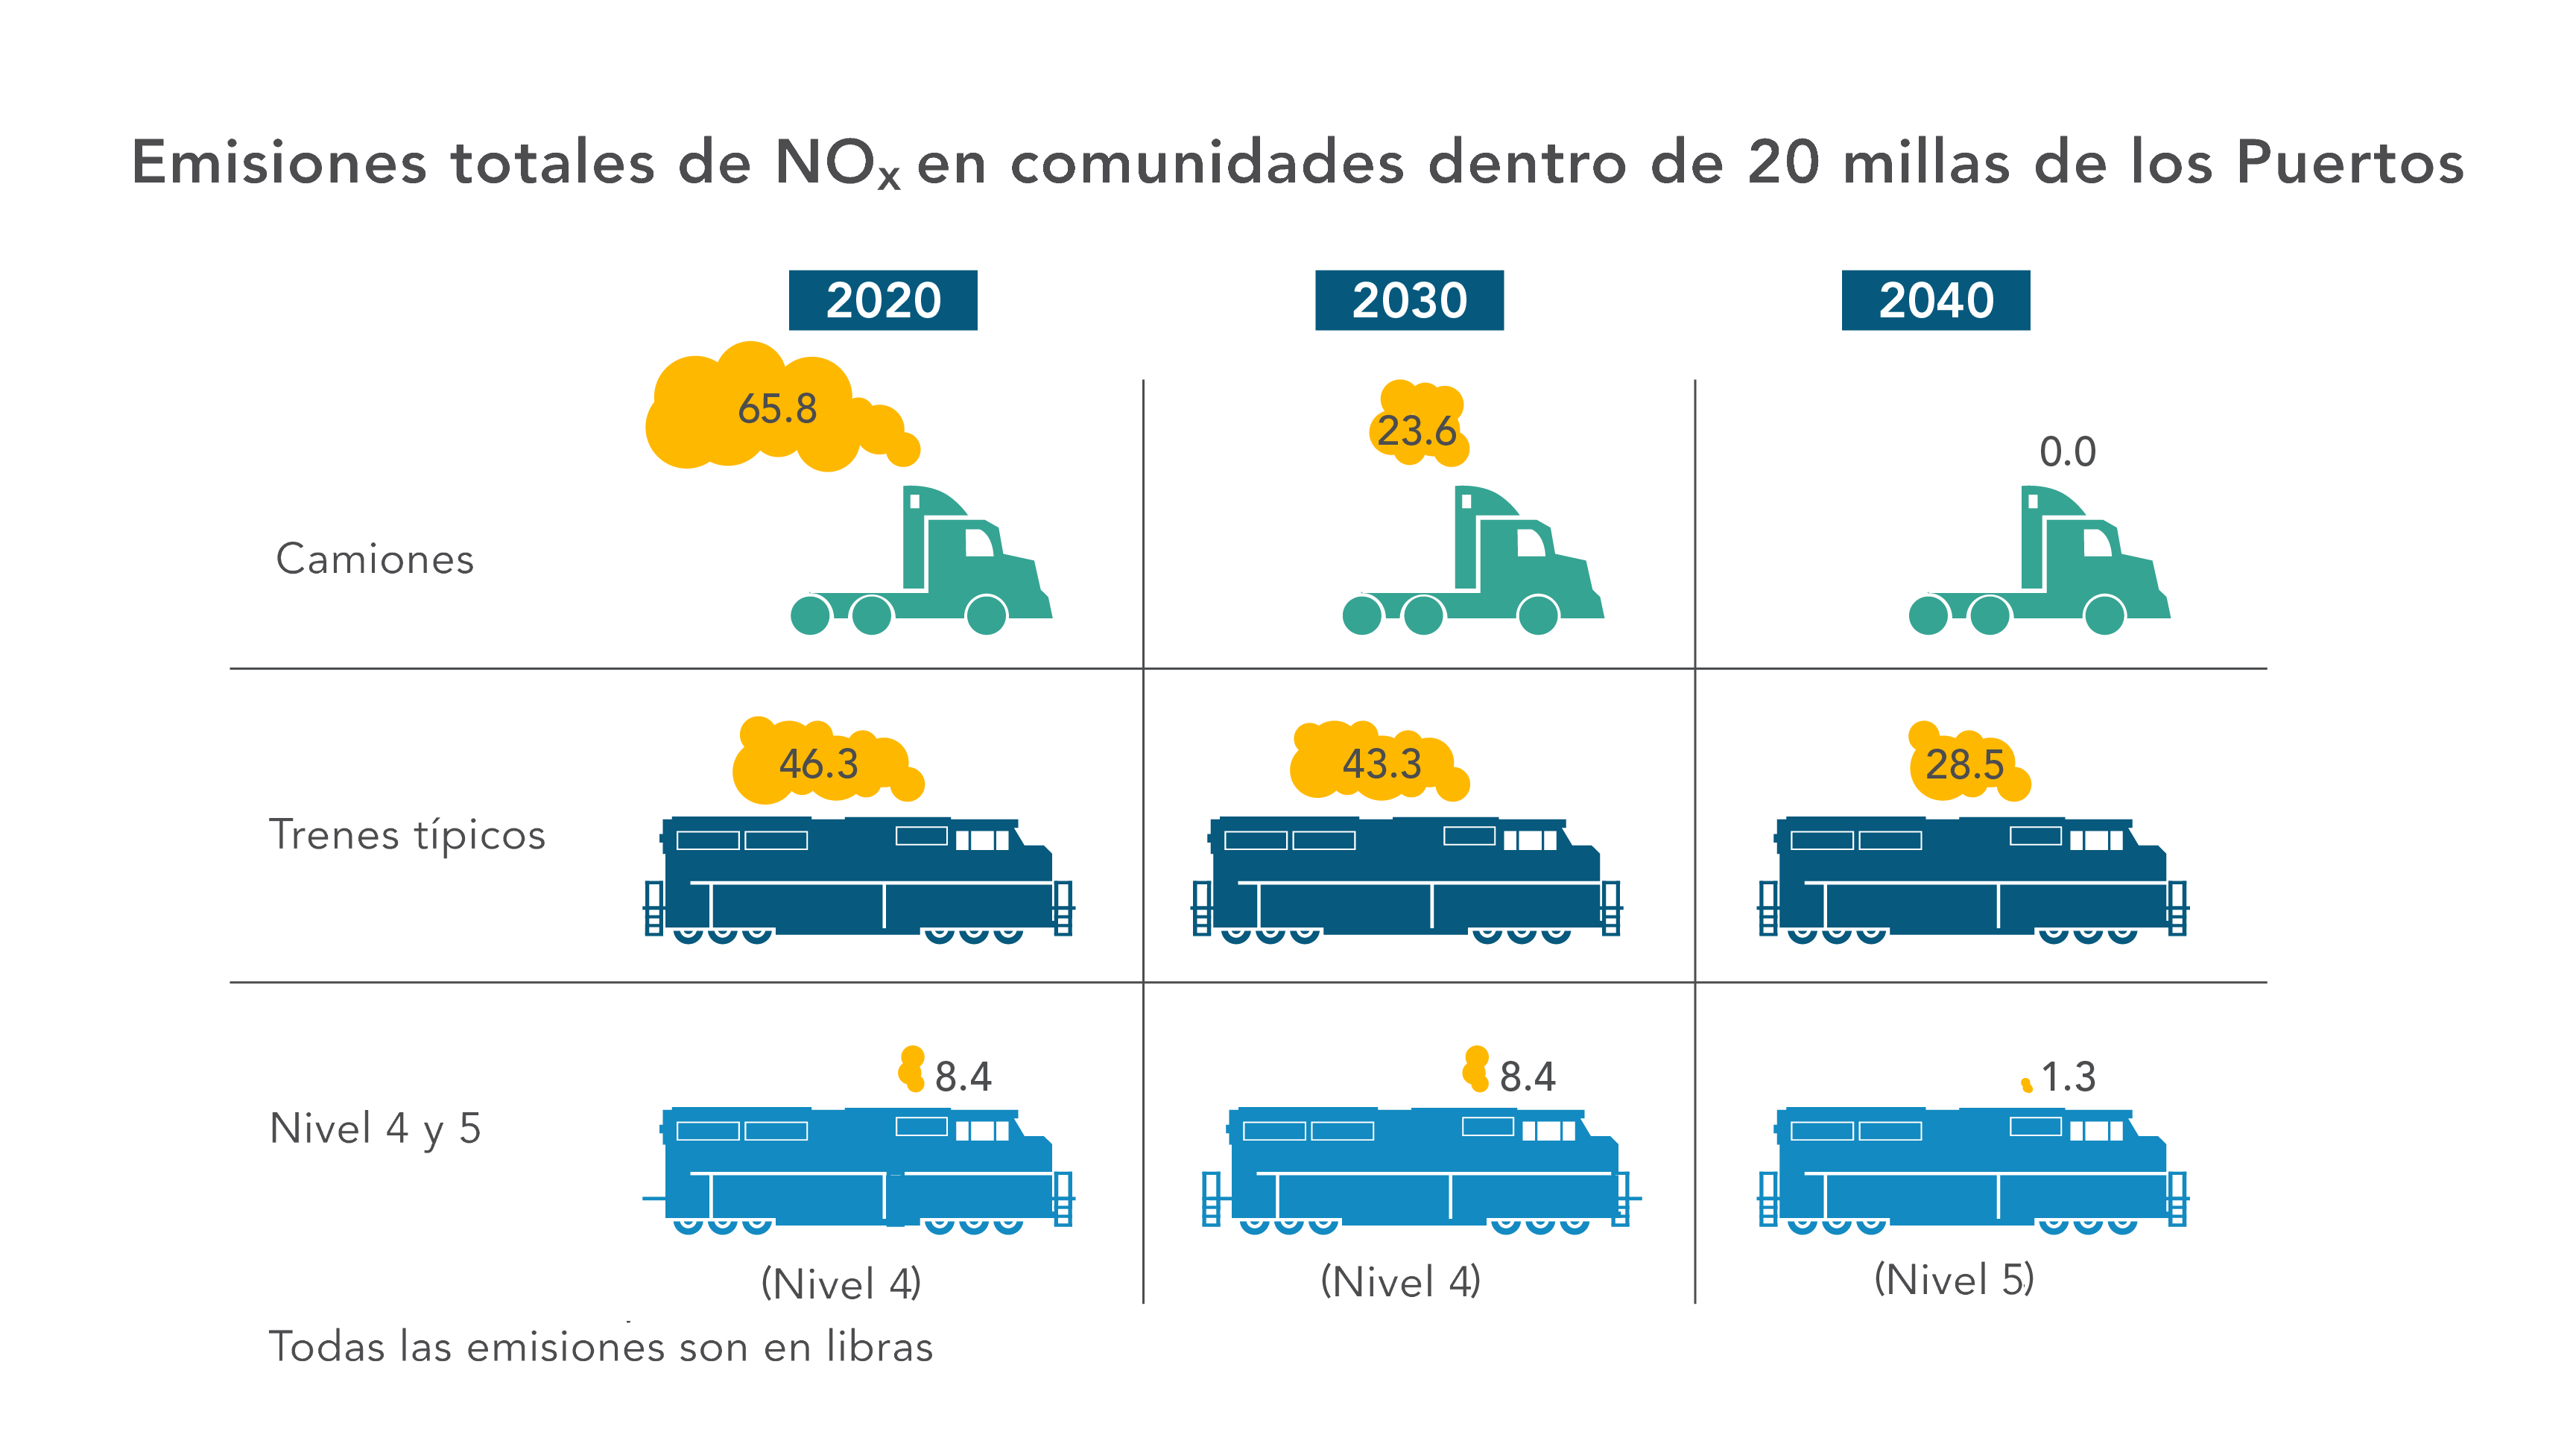 Emisiones totales de NOx en comunidades dentro de 20 millas de los Puertos